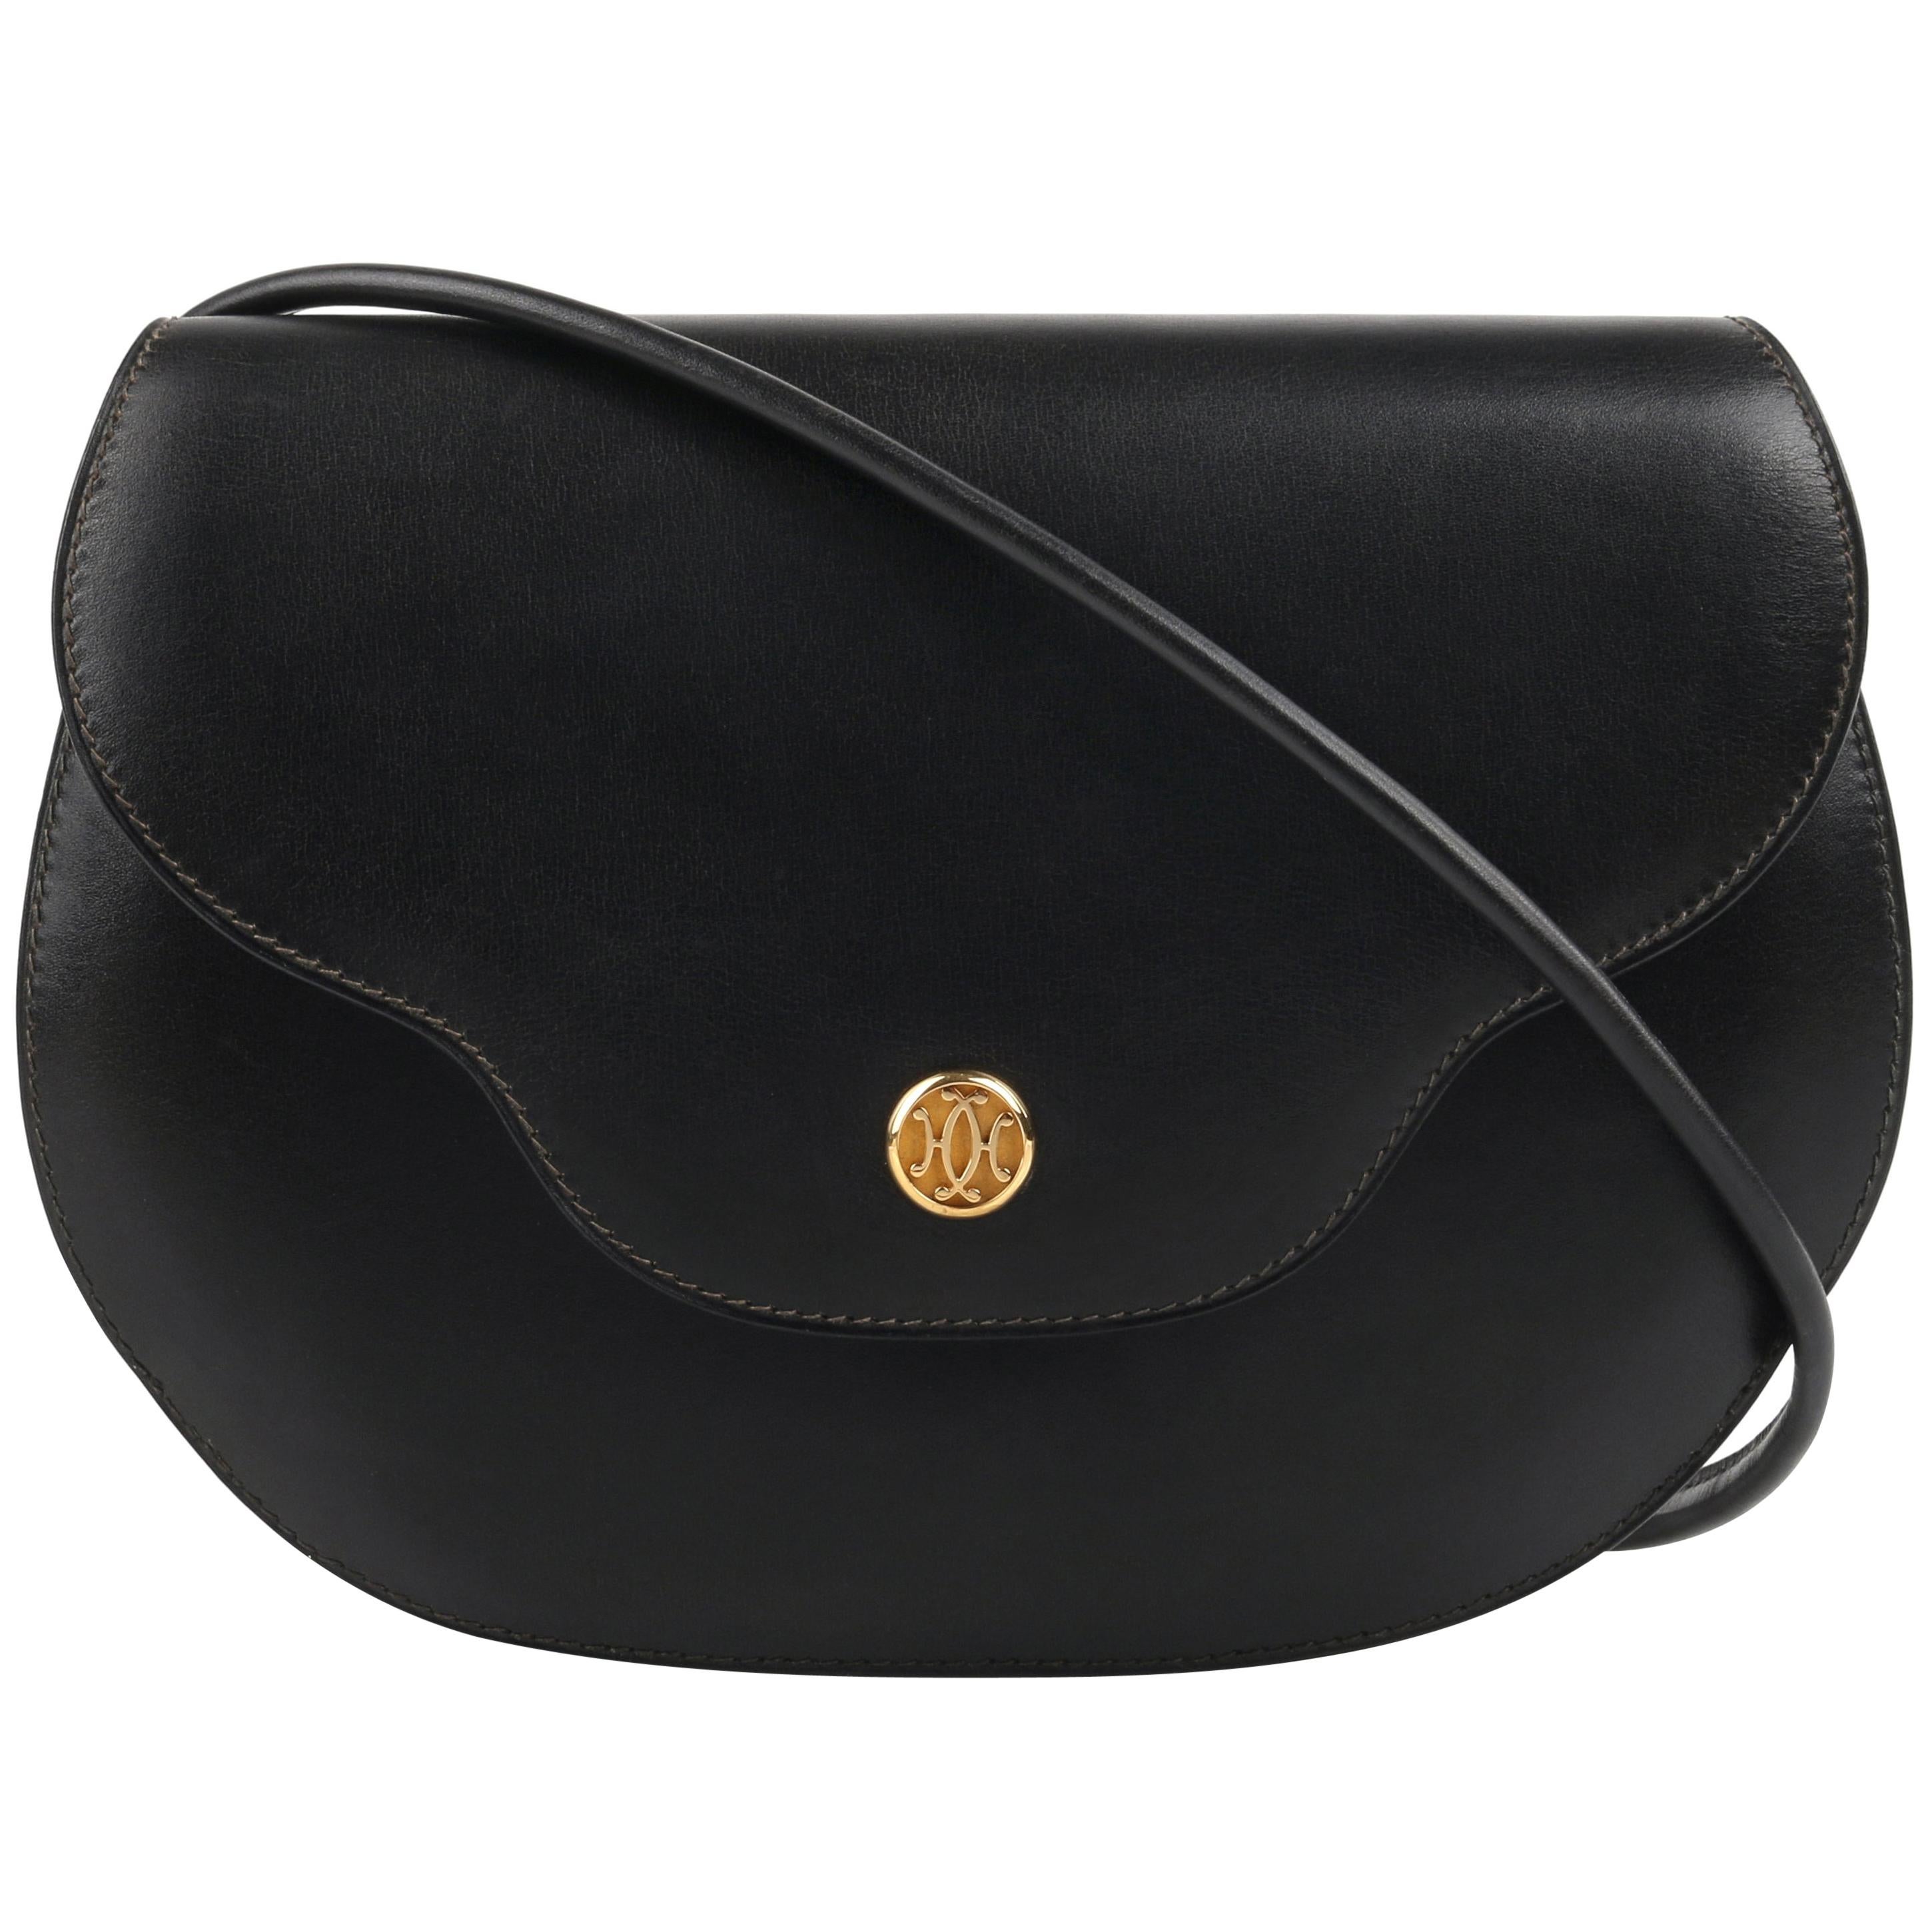 HERMES "Noumea" Black Leather Gold Hardware Shoulder Bag Crossbody Handbag 